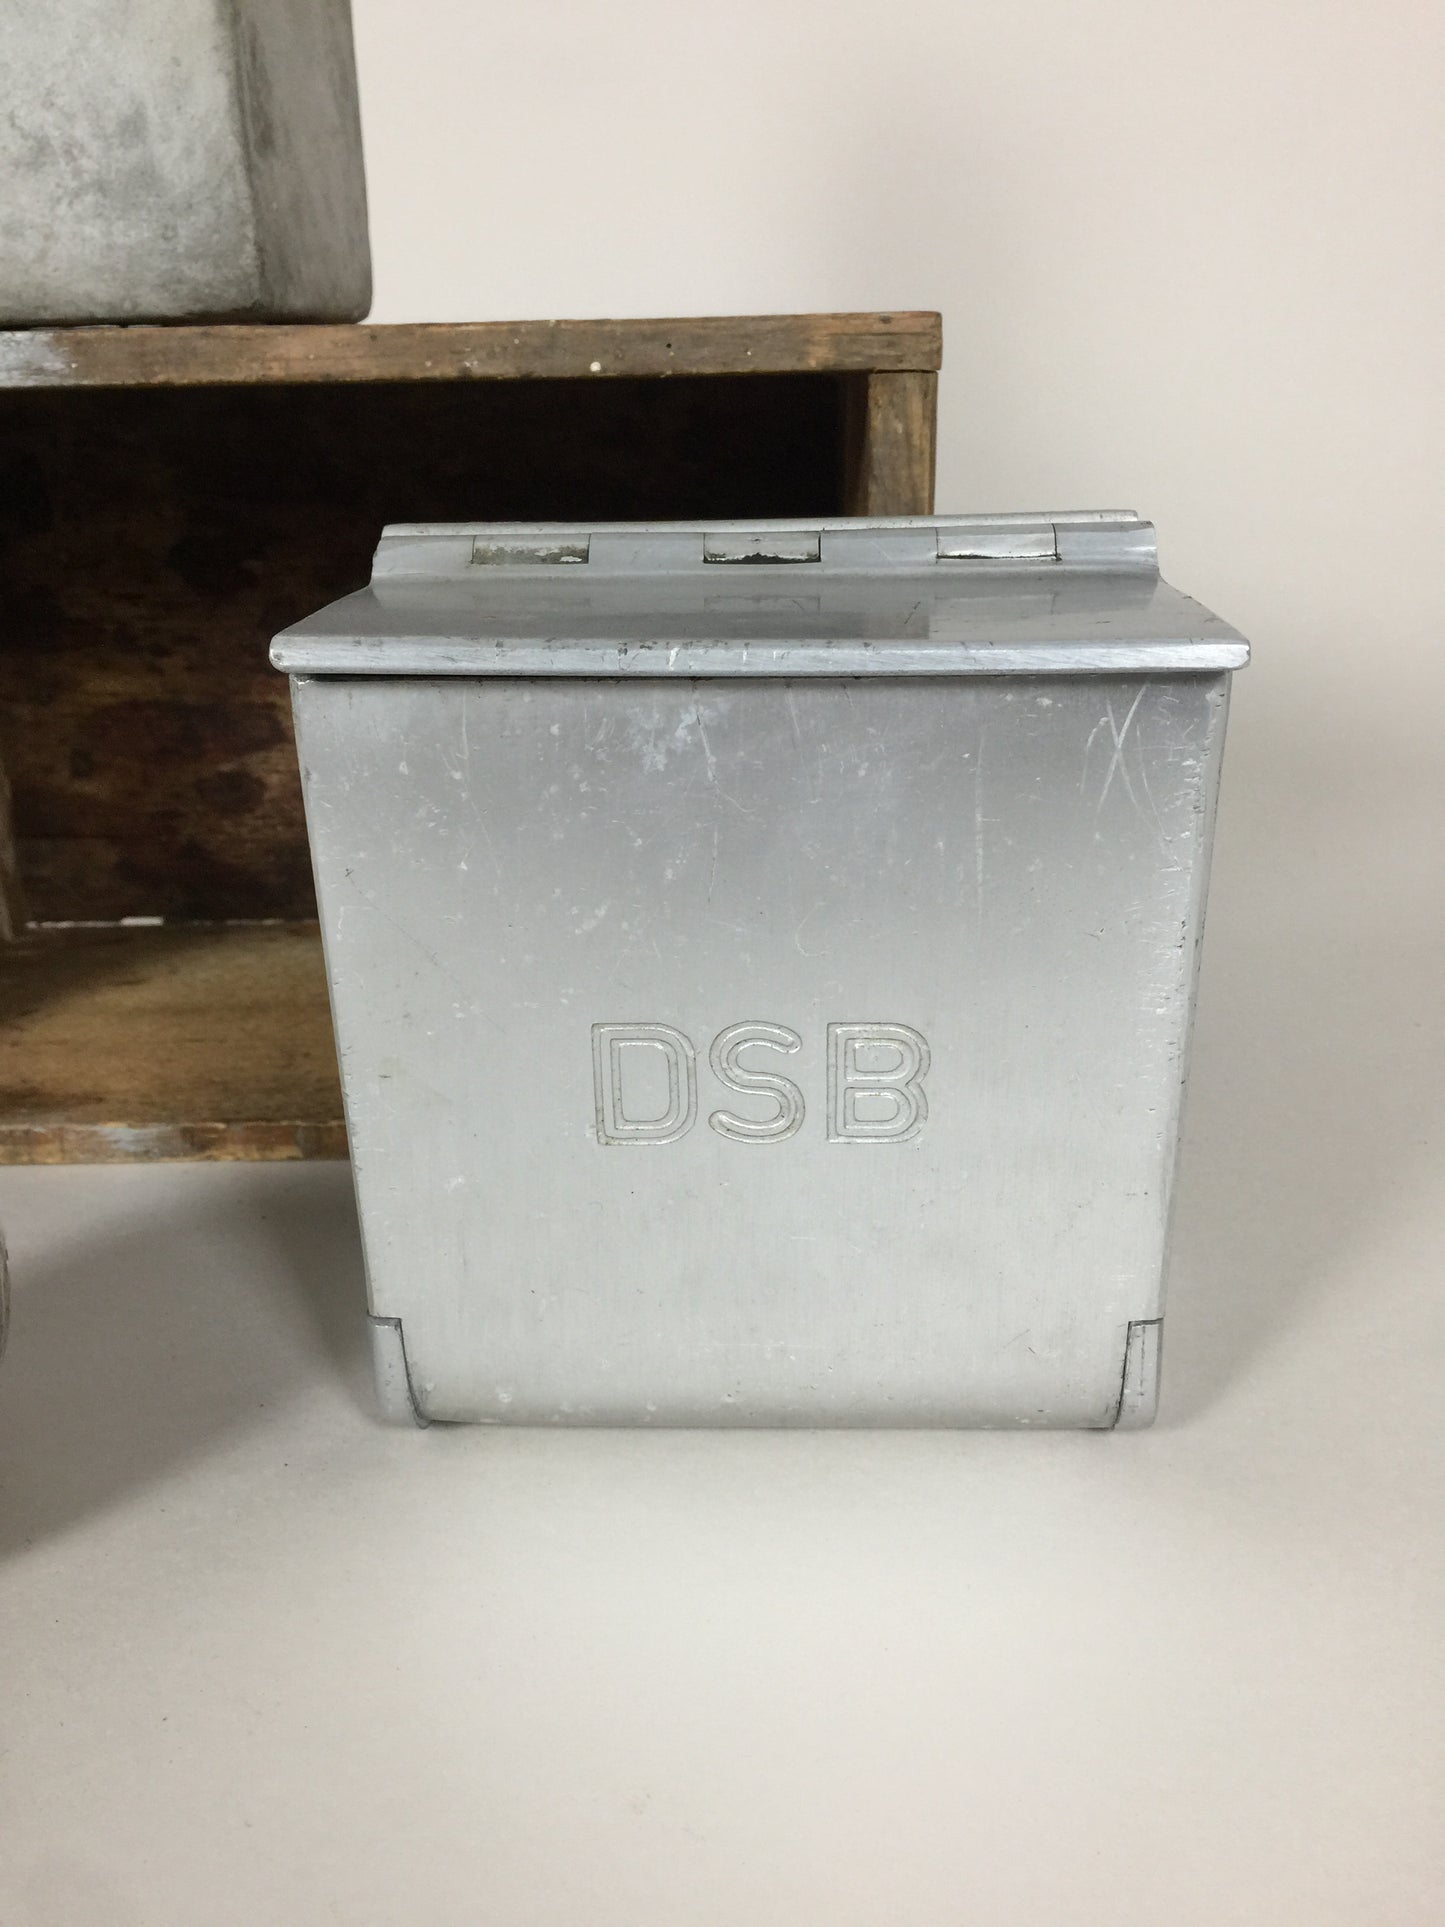 DSB Aschenbecher, groß und mit Logo